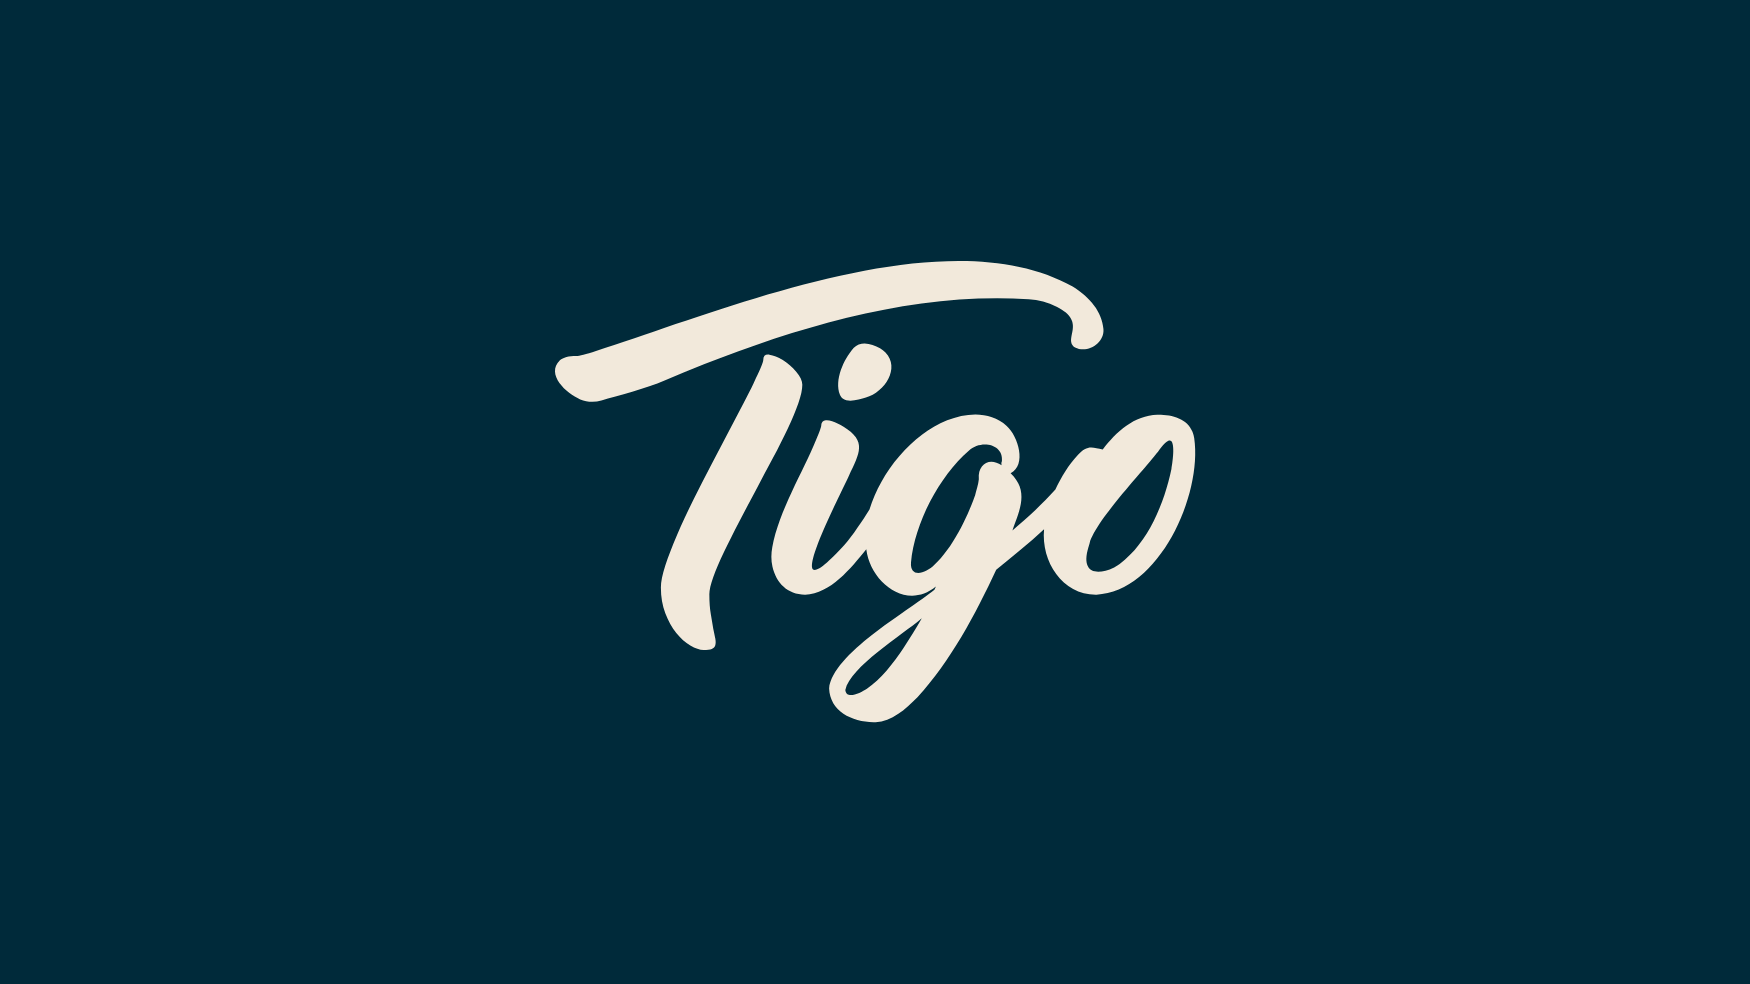 Tigo酒精饮料包装这样设计既现代又有活力(图2)